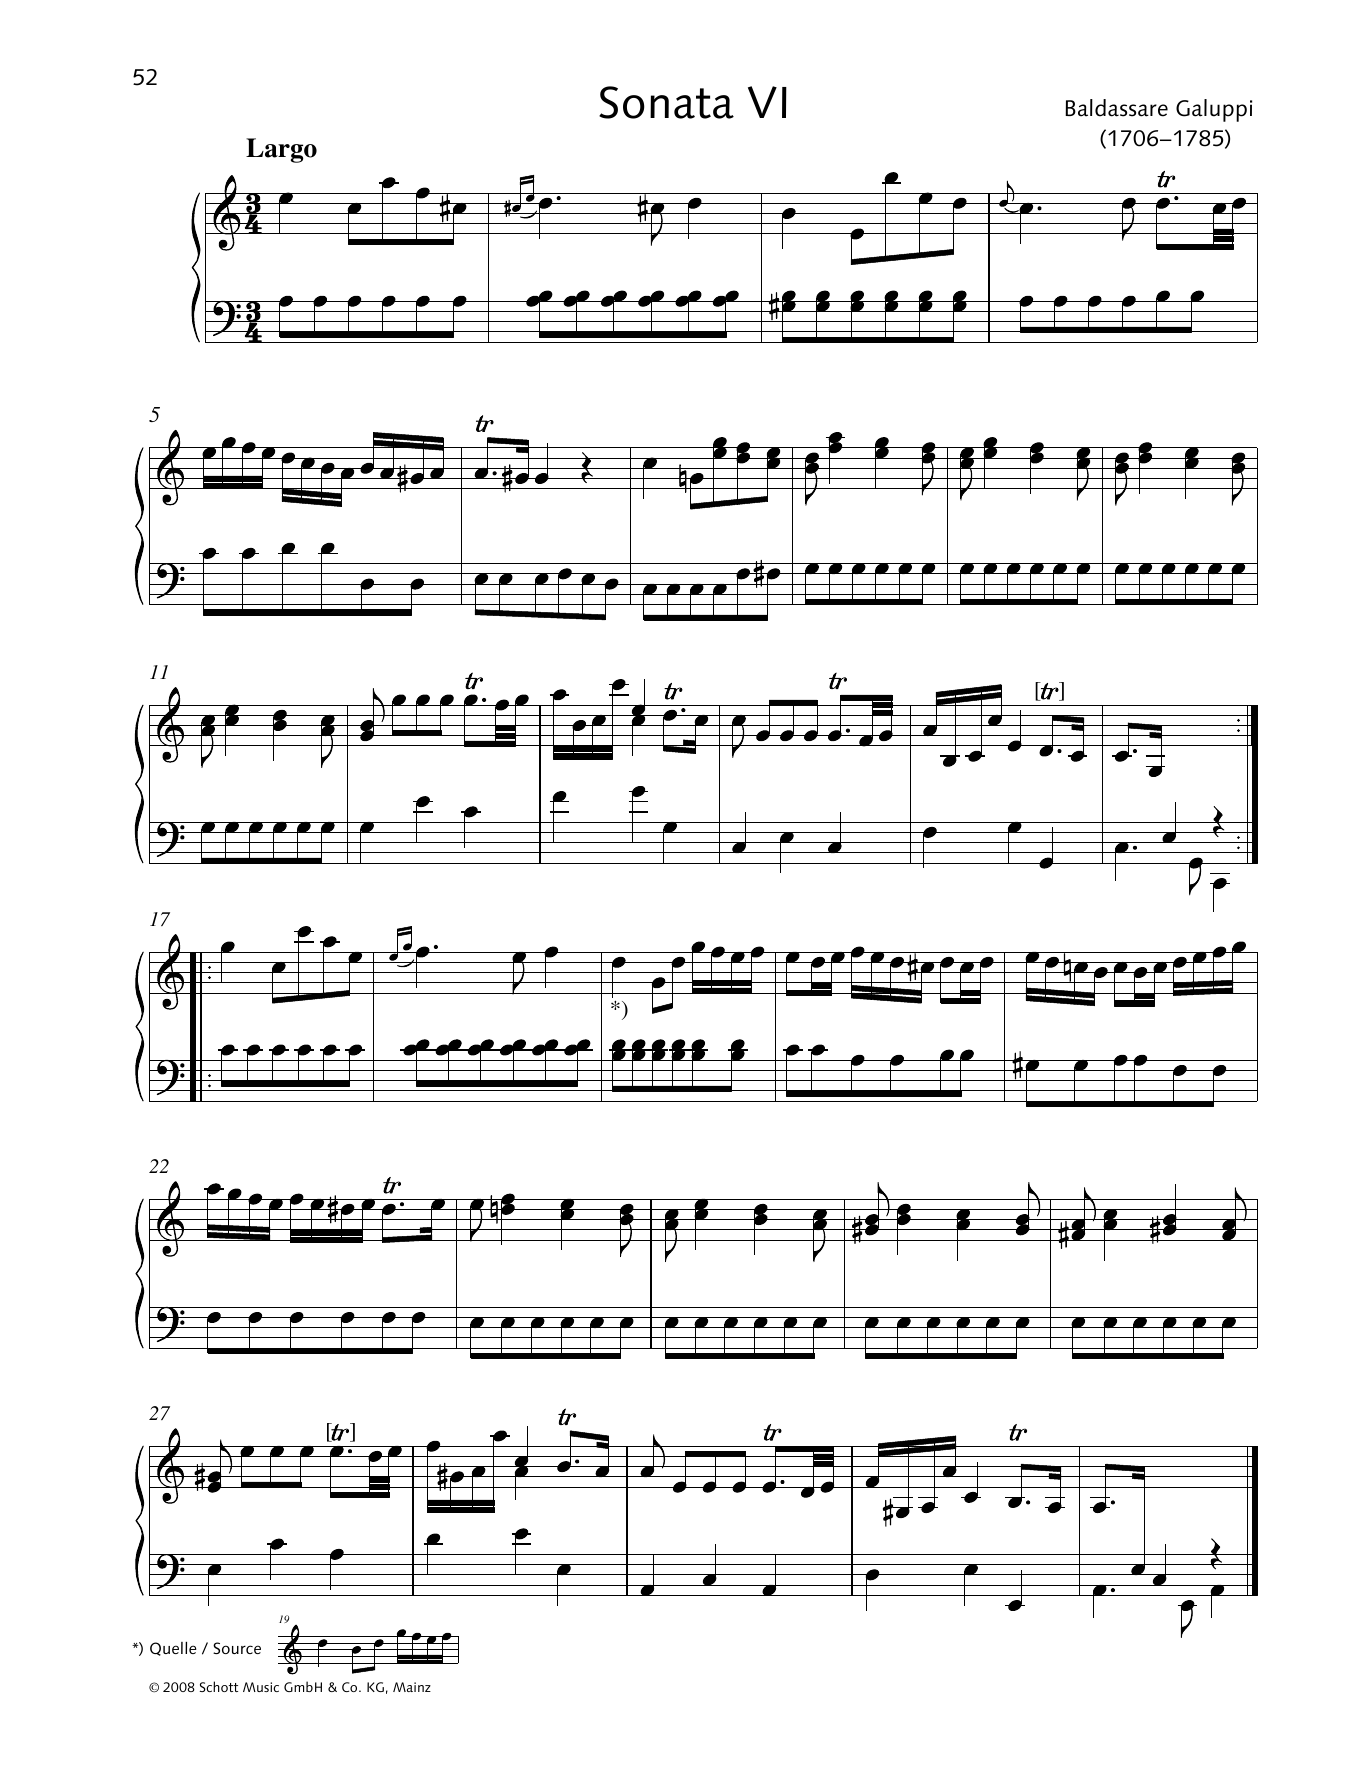 Baldassare Galuppi Sonata VI A minor Sheet Music Notes & Chords for Piano Solo - Download or Print PDF